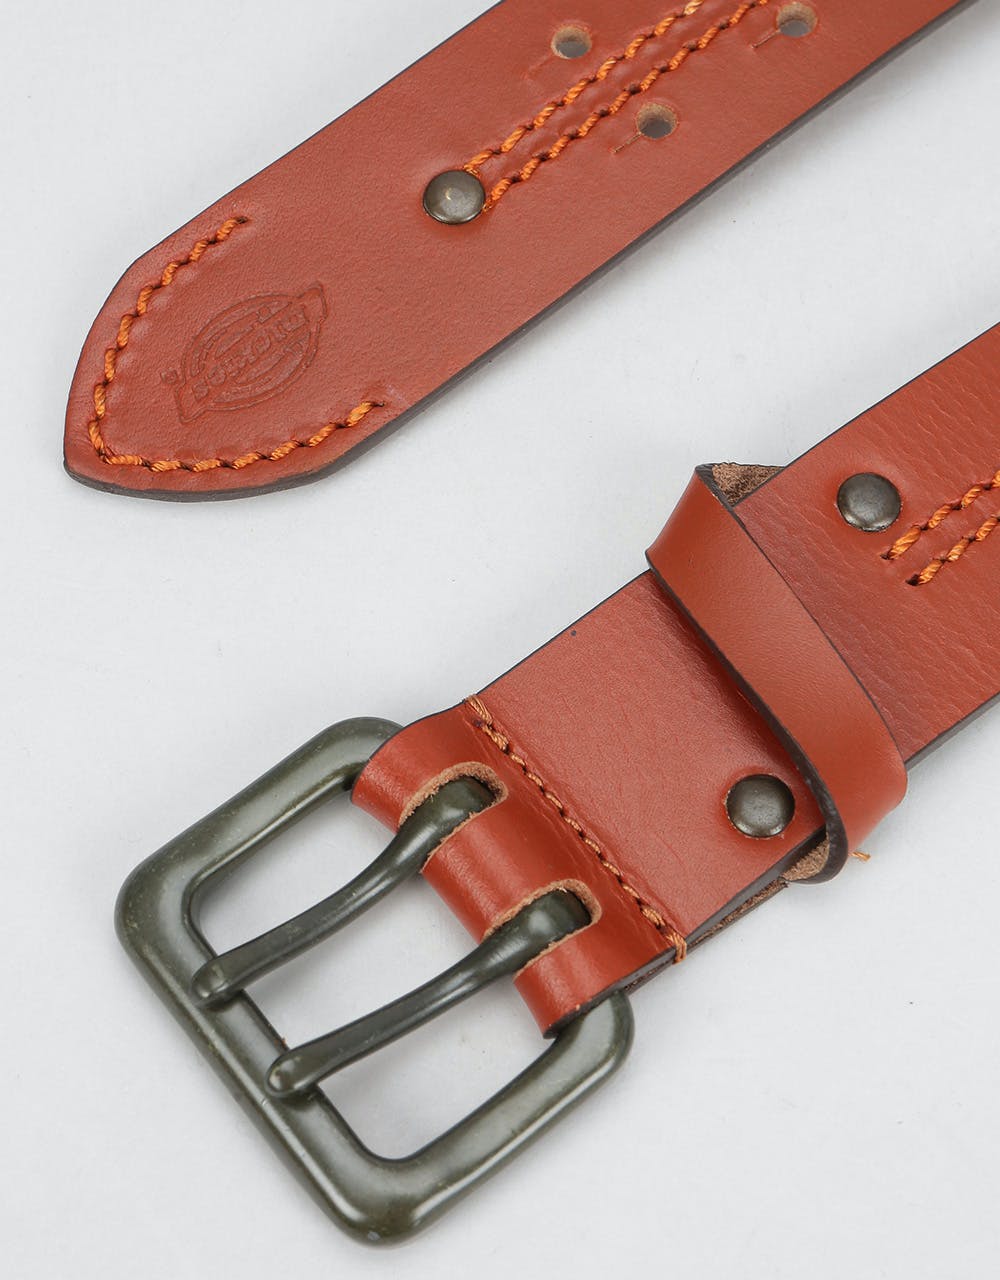 Dickies Bluefield Leather Belt - Brown